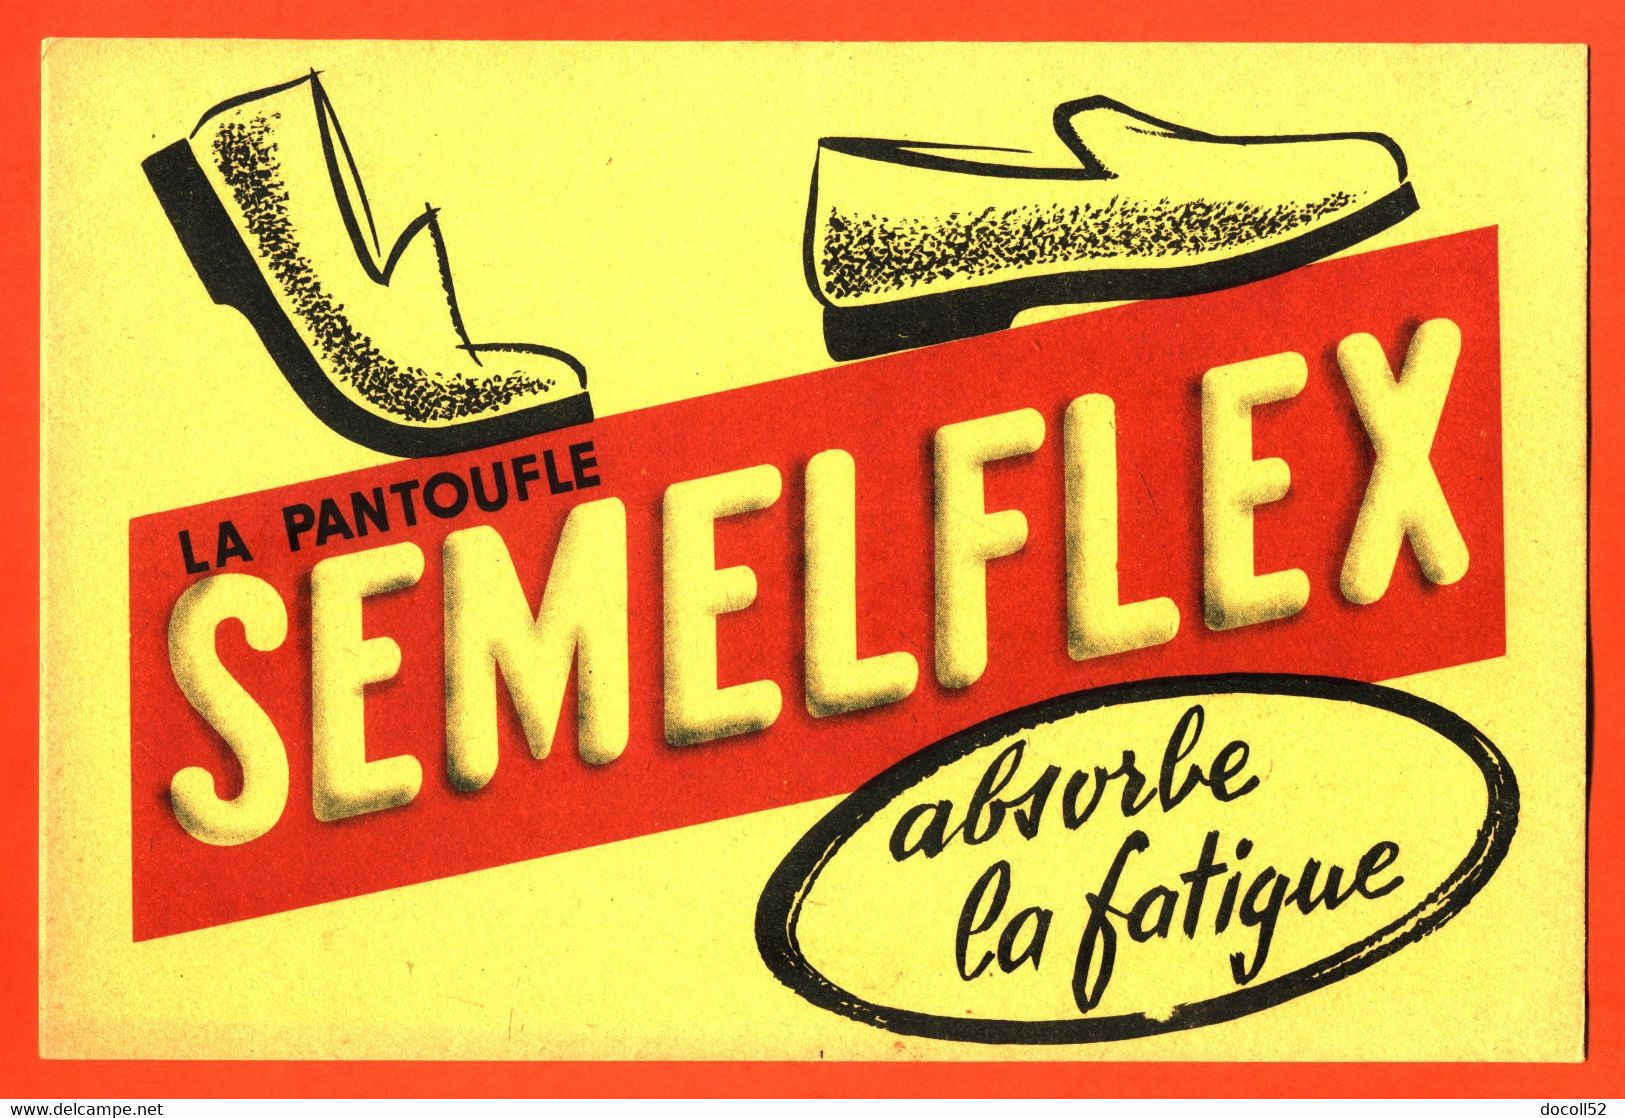 BUVARD LA PANTOUFLE SEMELFLEX ABSORBE LA FATIGUE - Shoes